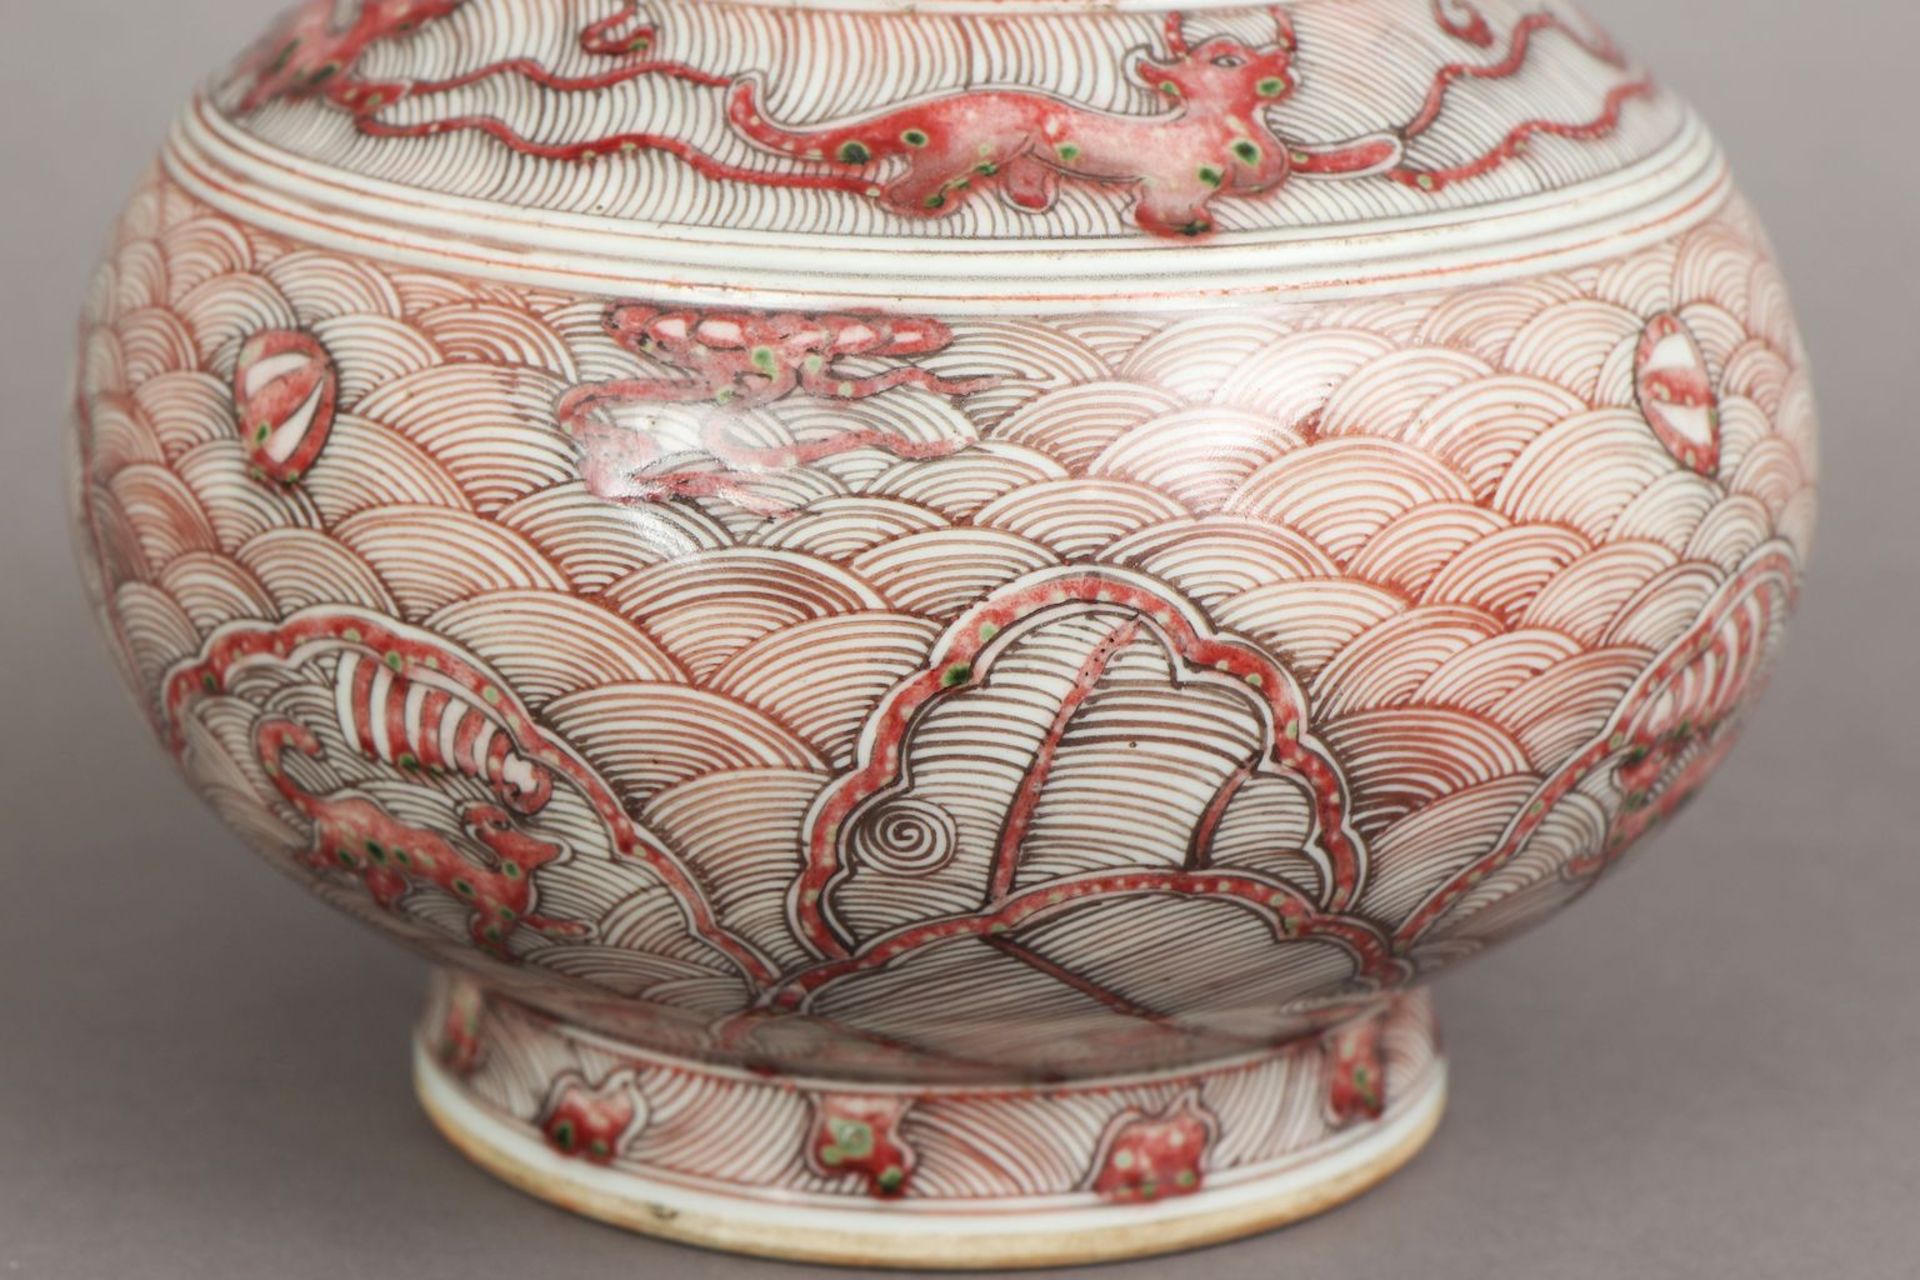 Chinesische Porzellanvase mit korallenrotem Drachendekor - Bild 3 aus 5